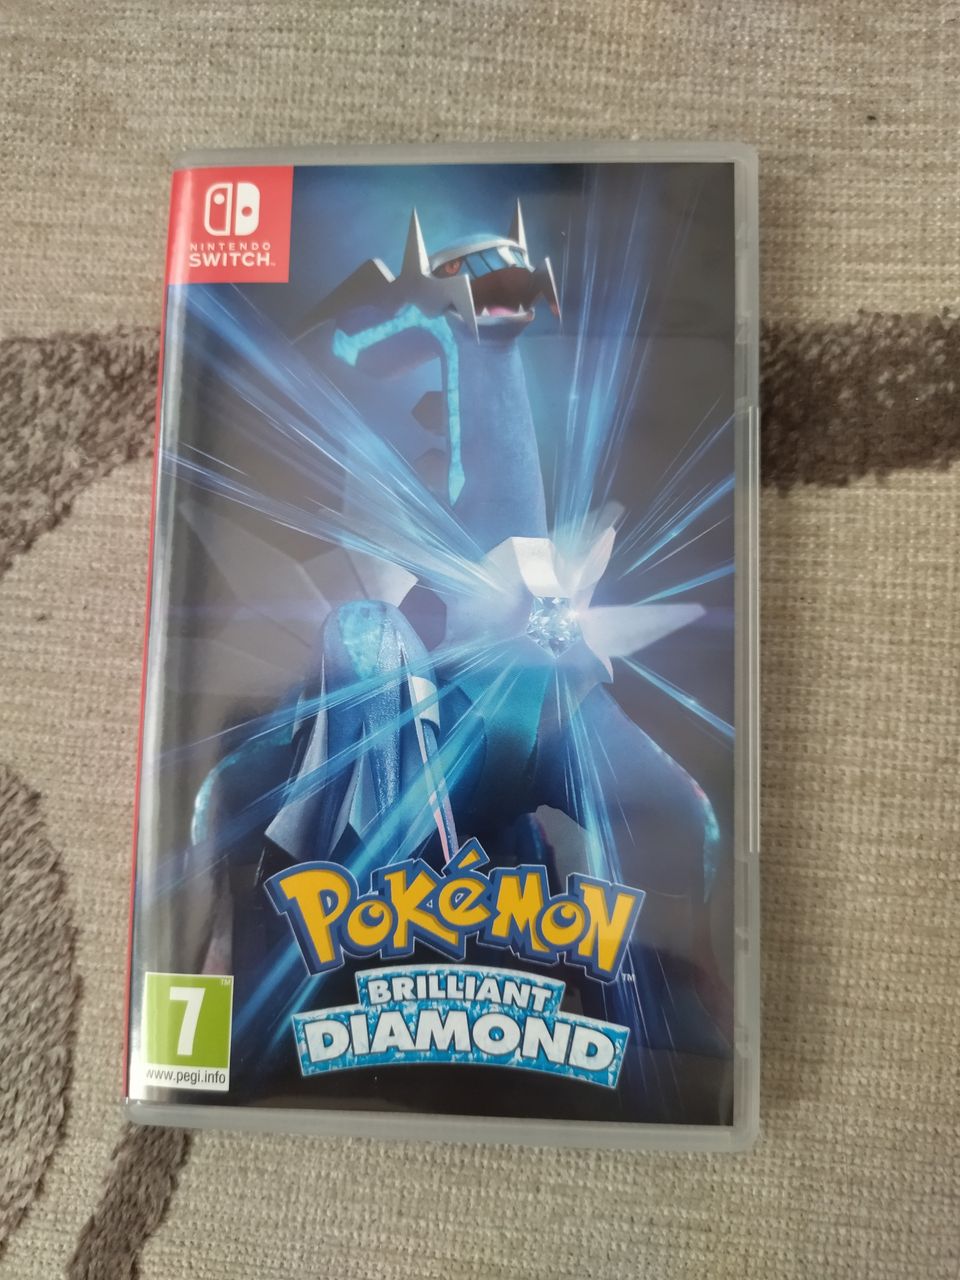 Pokemon brilliant diamond